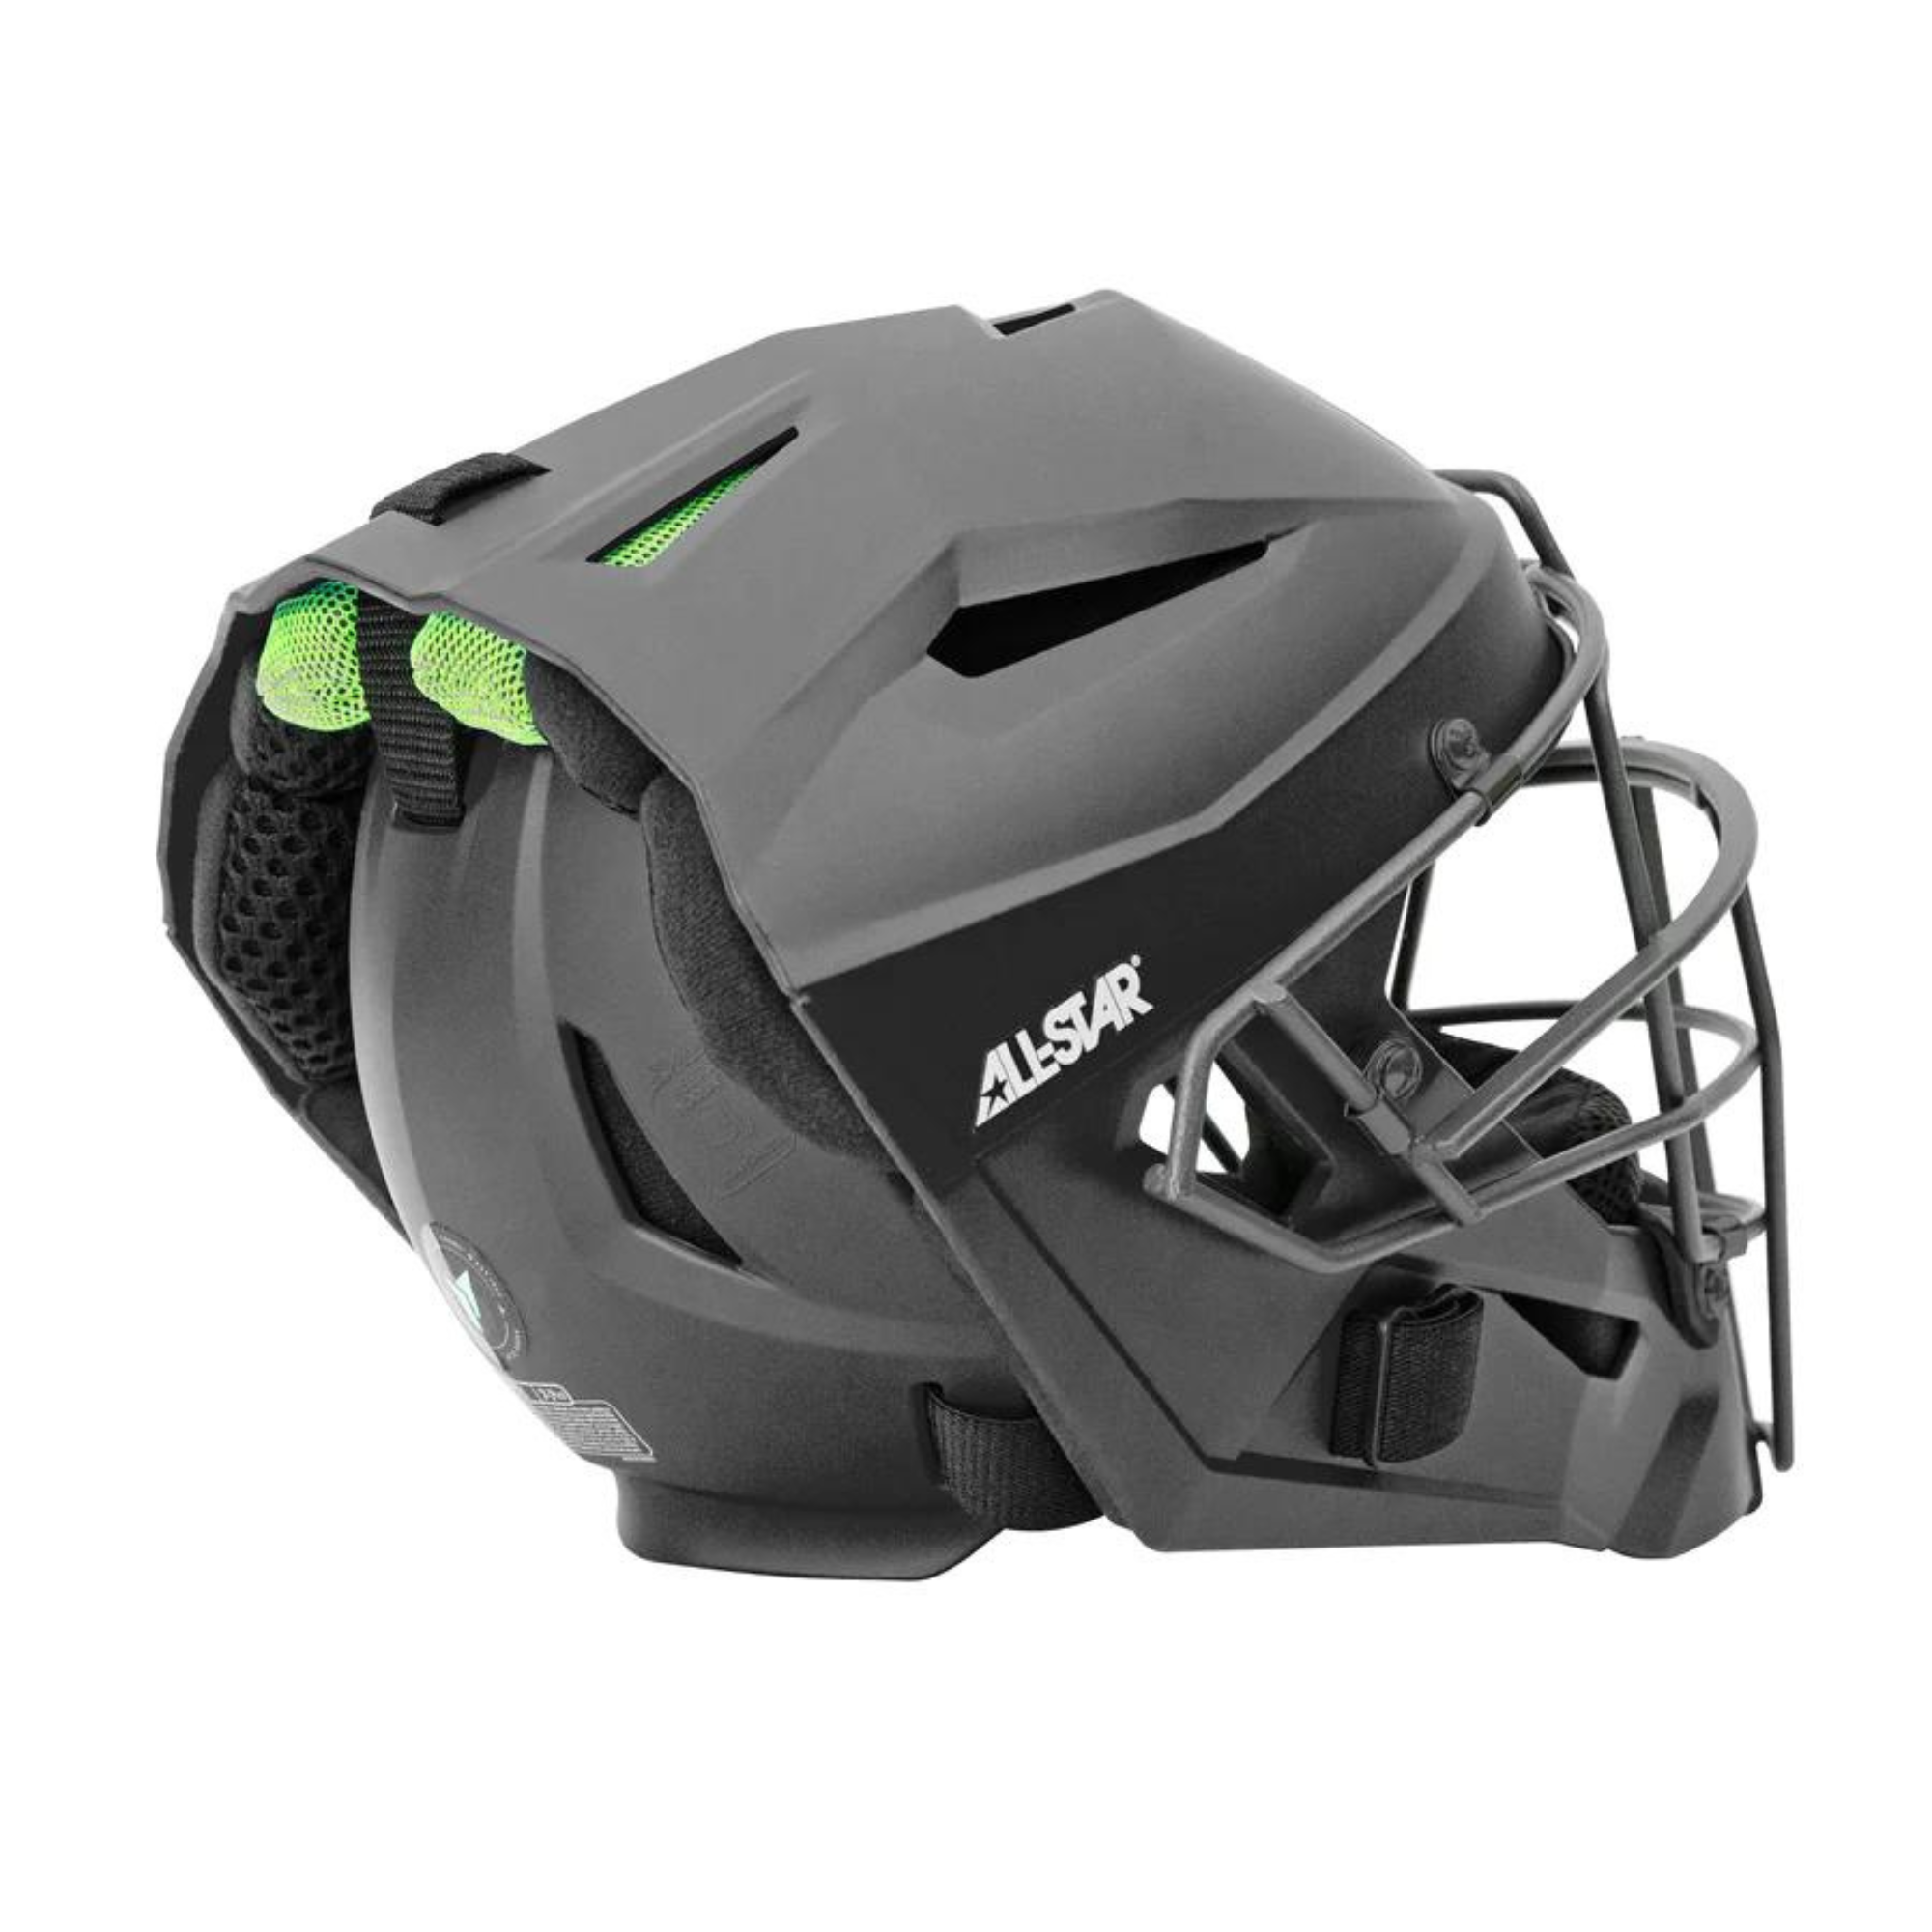 All-Star MVP5 Series Helmet w/Deflexion Tech/Matte